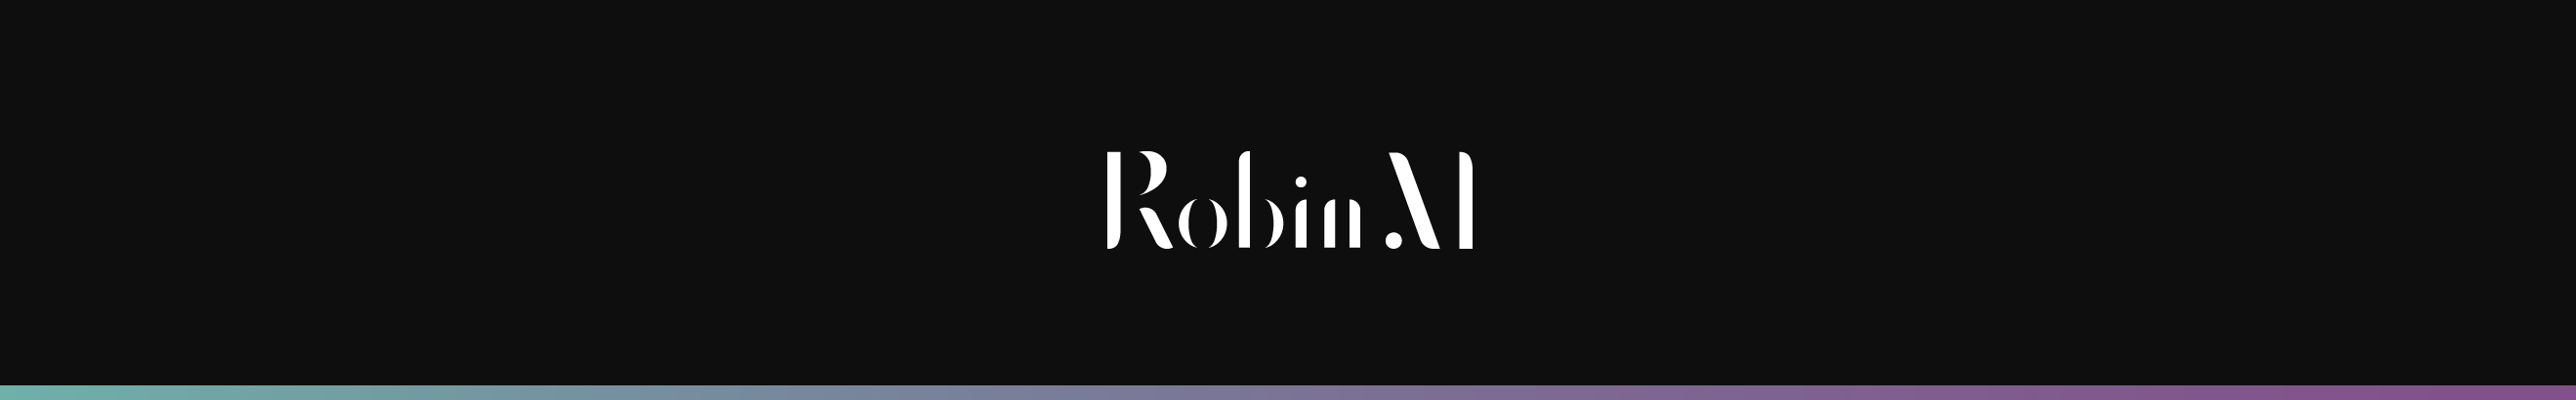 Robin Metzinger profil başlığı